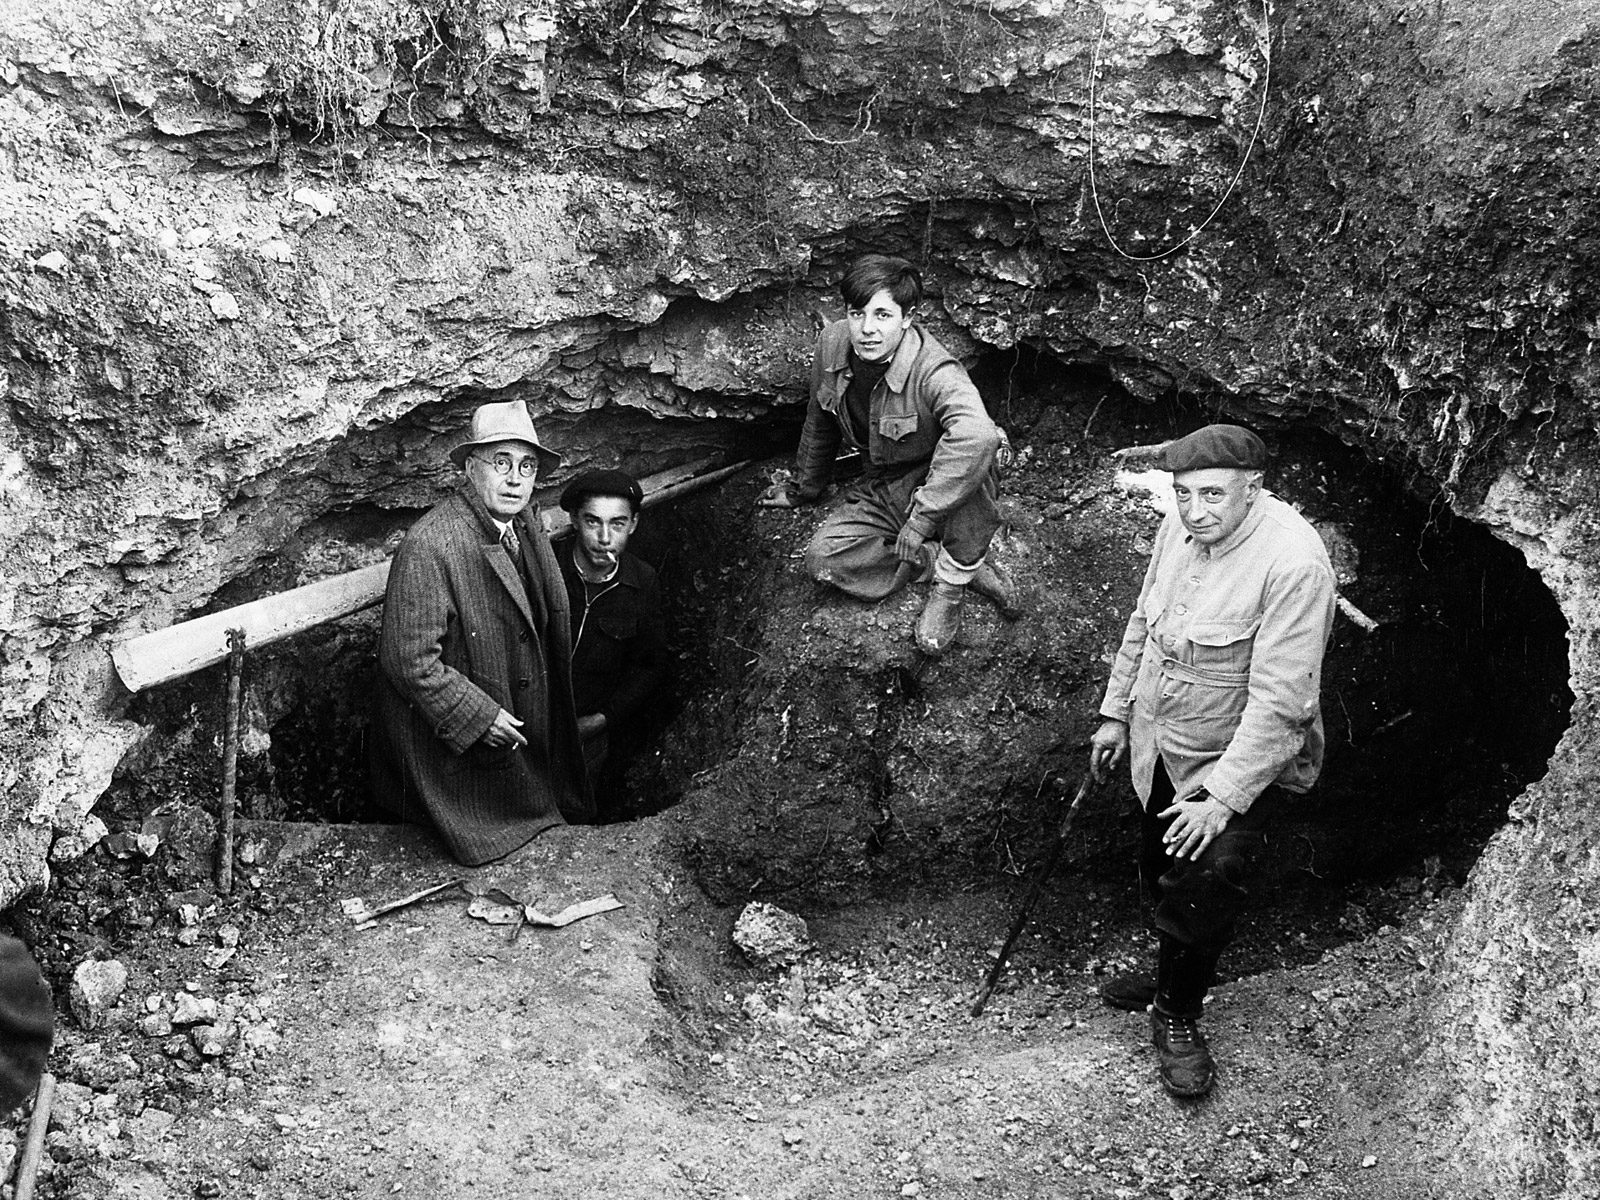 Photographie de l'entrée de la grotte de Lascaux en 1940